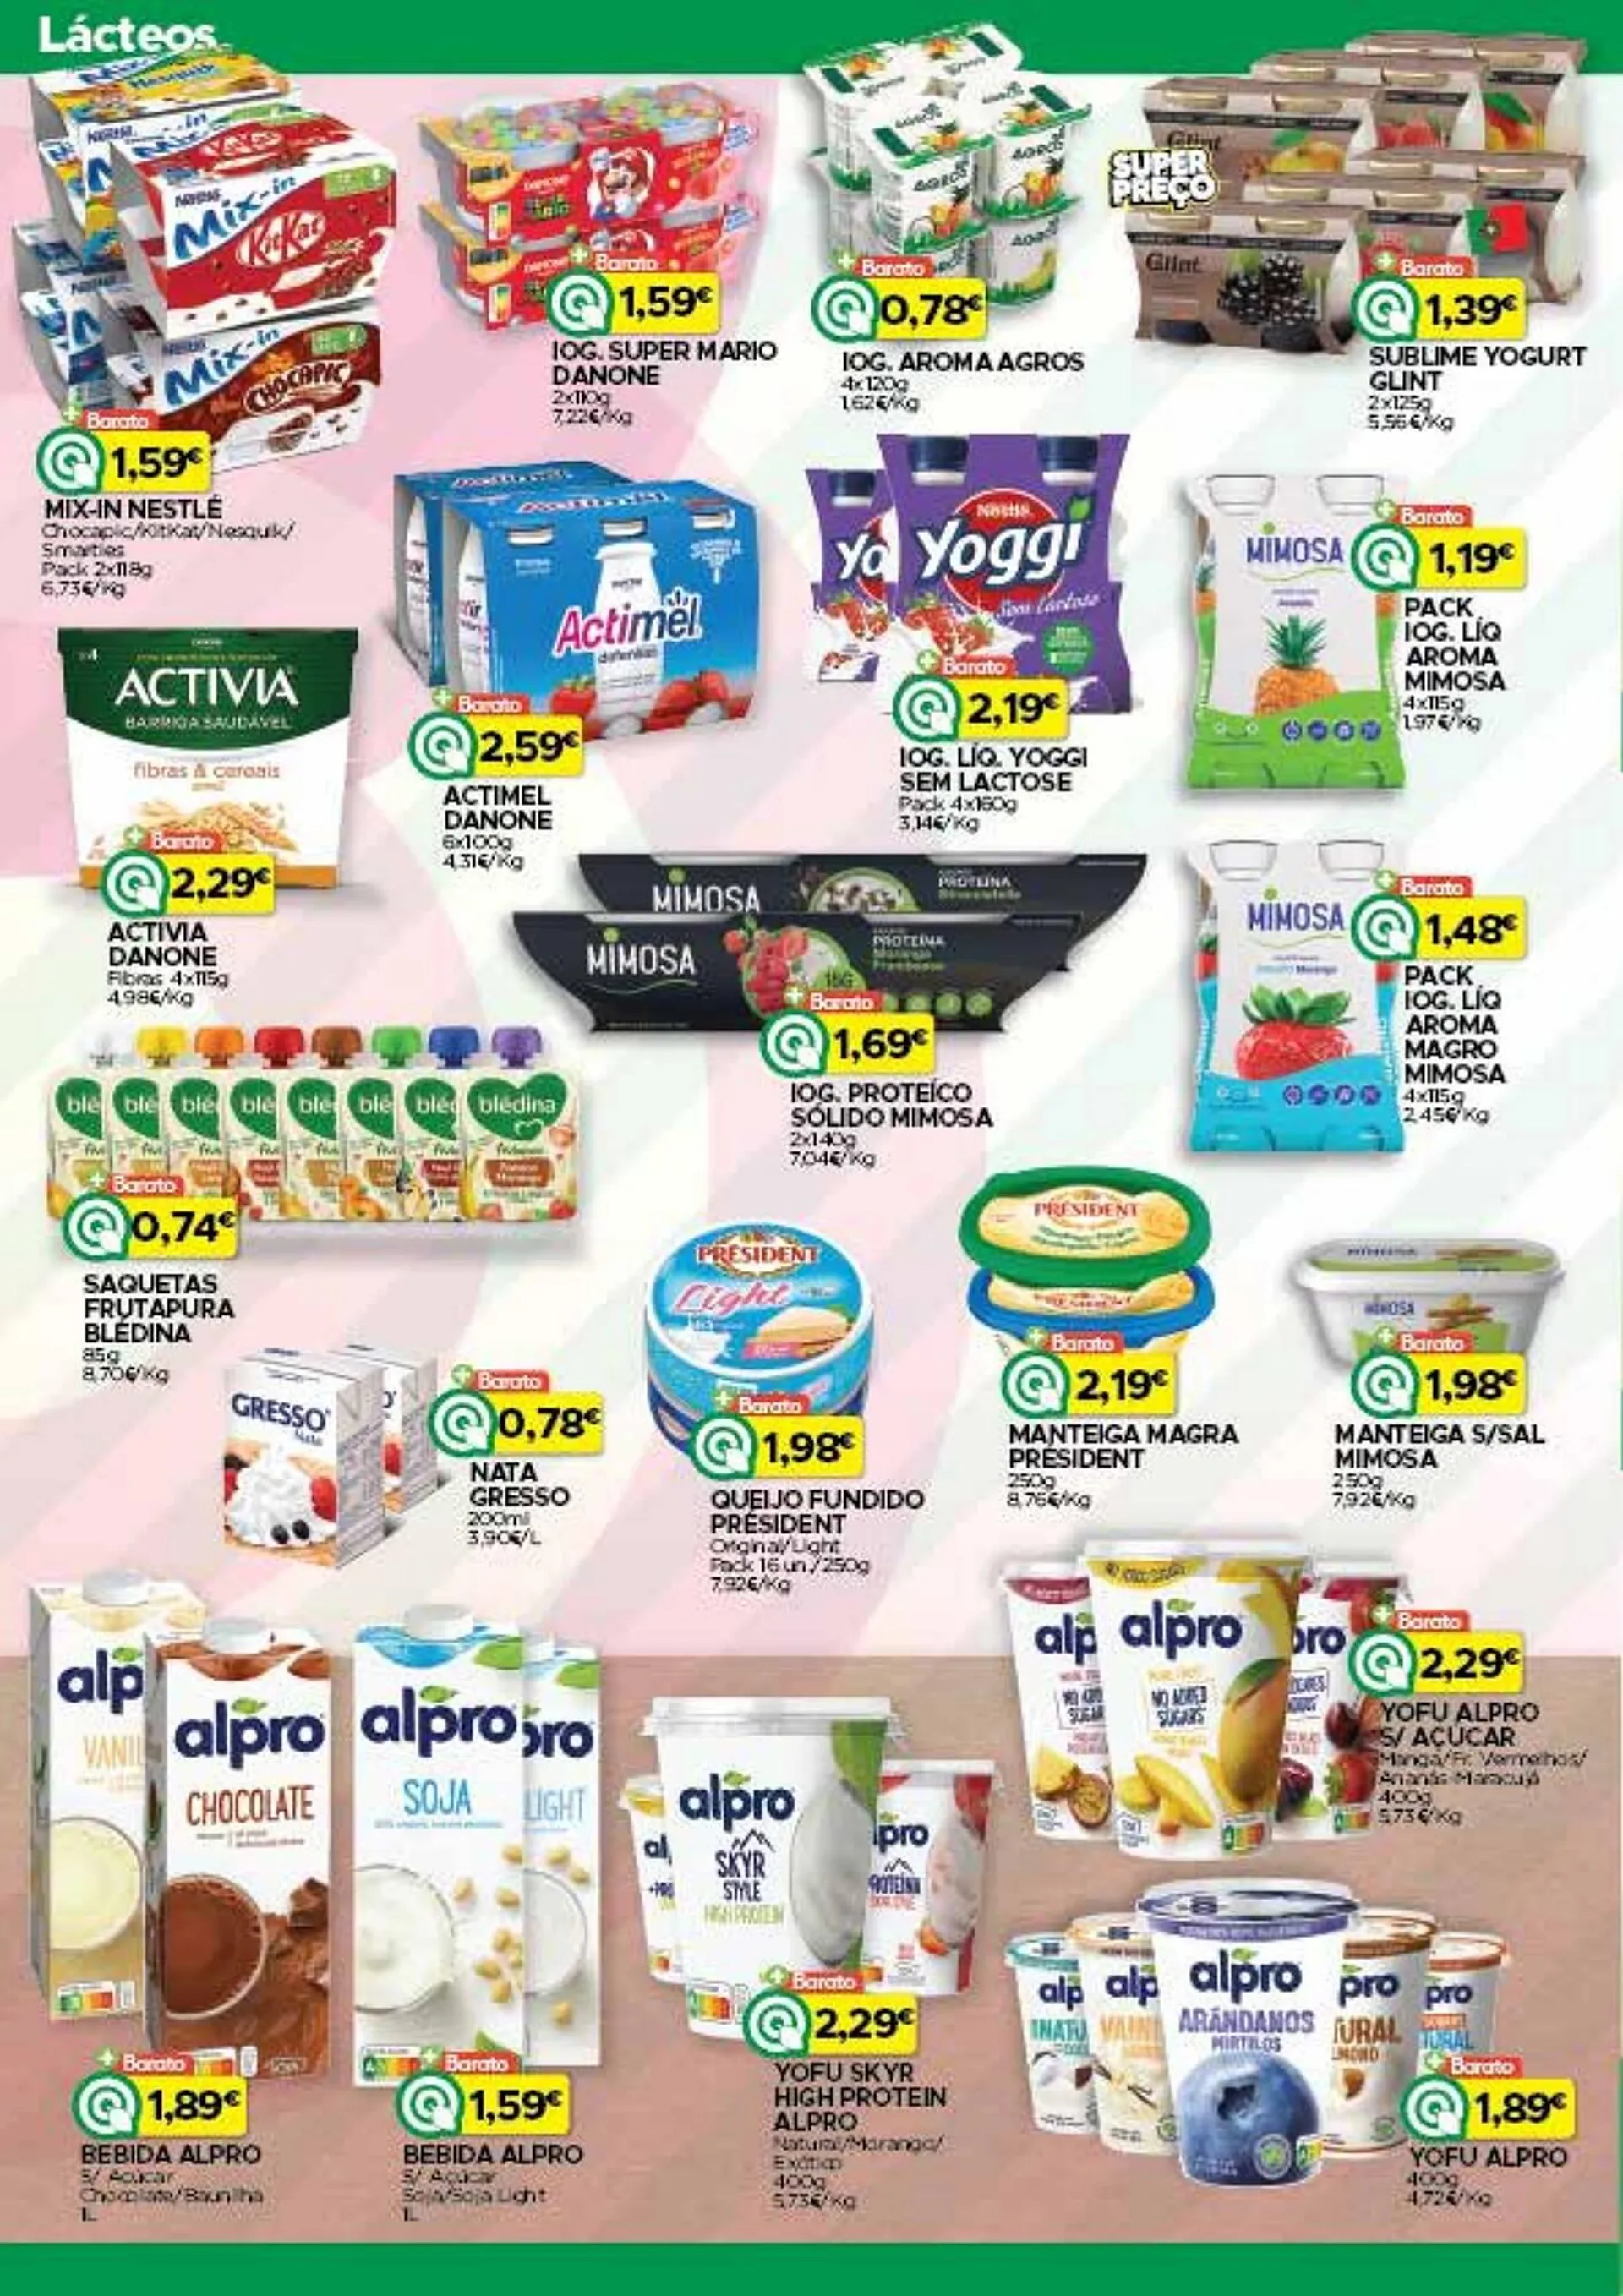 Folheto Supermercados Preços Baixos - 2